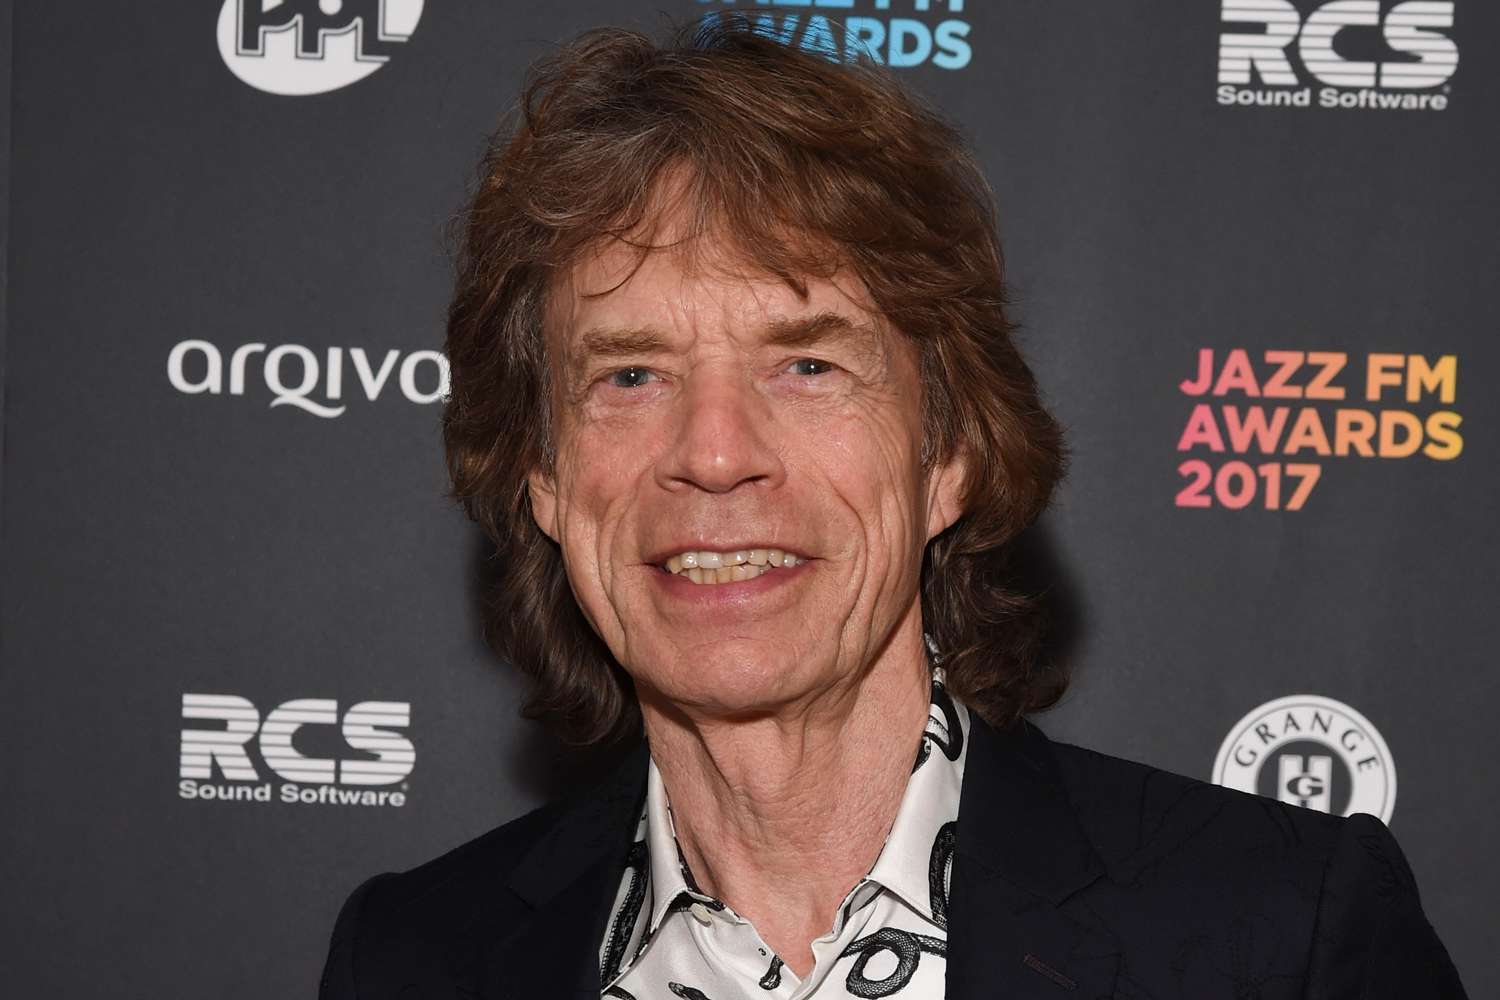 Mick Jagger